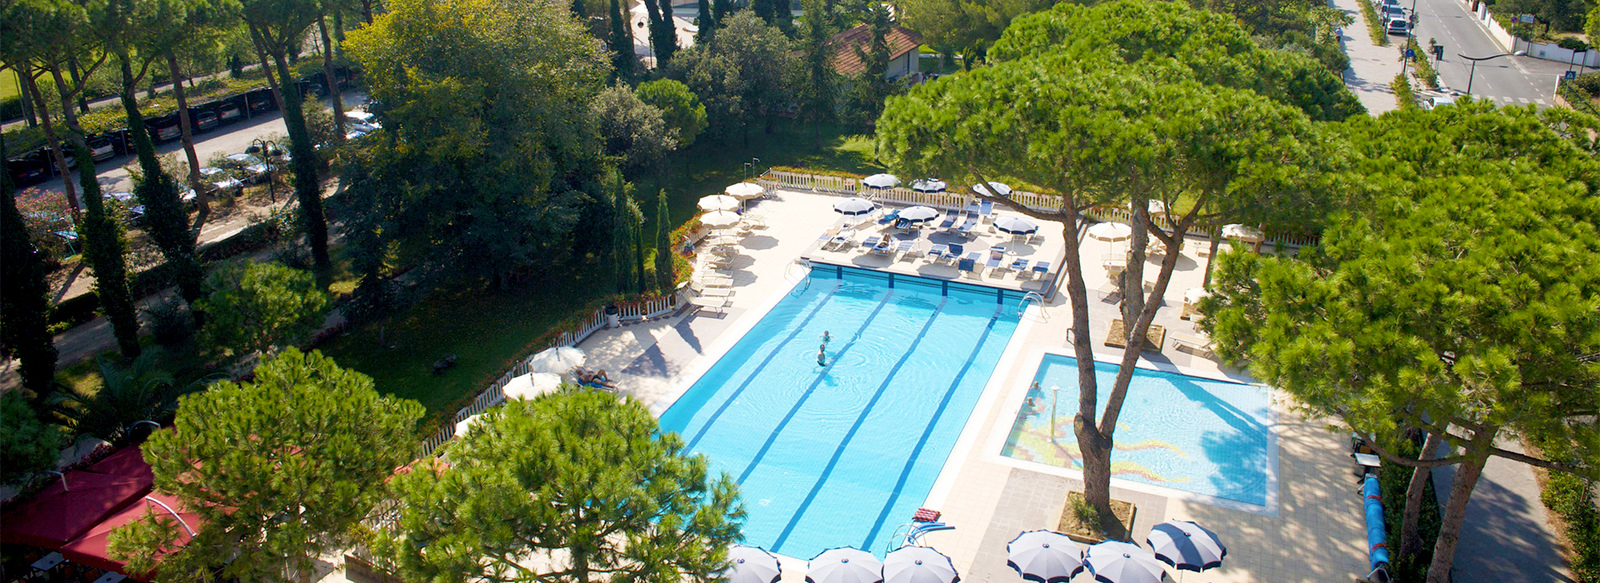 Miglior Prezzo Hotel Marinetta Marina Di Bibbona Toscana